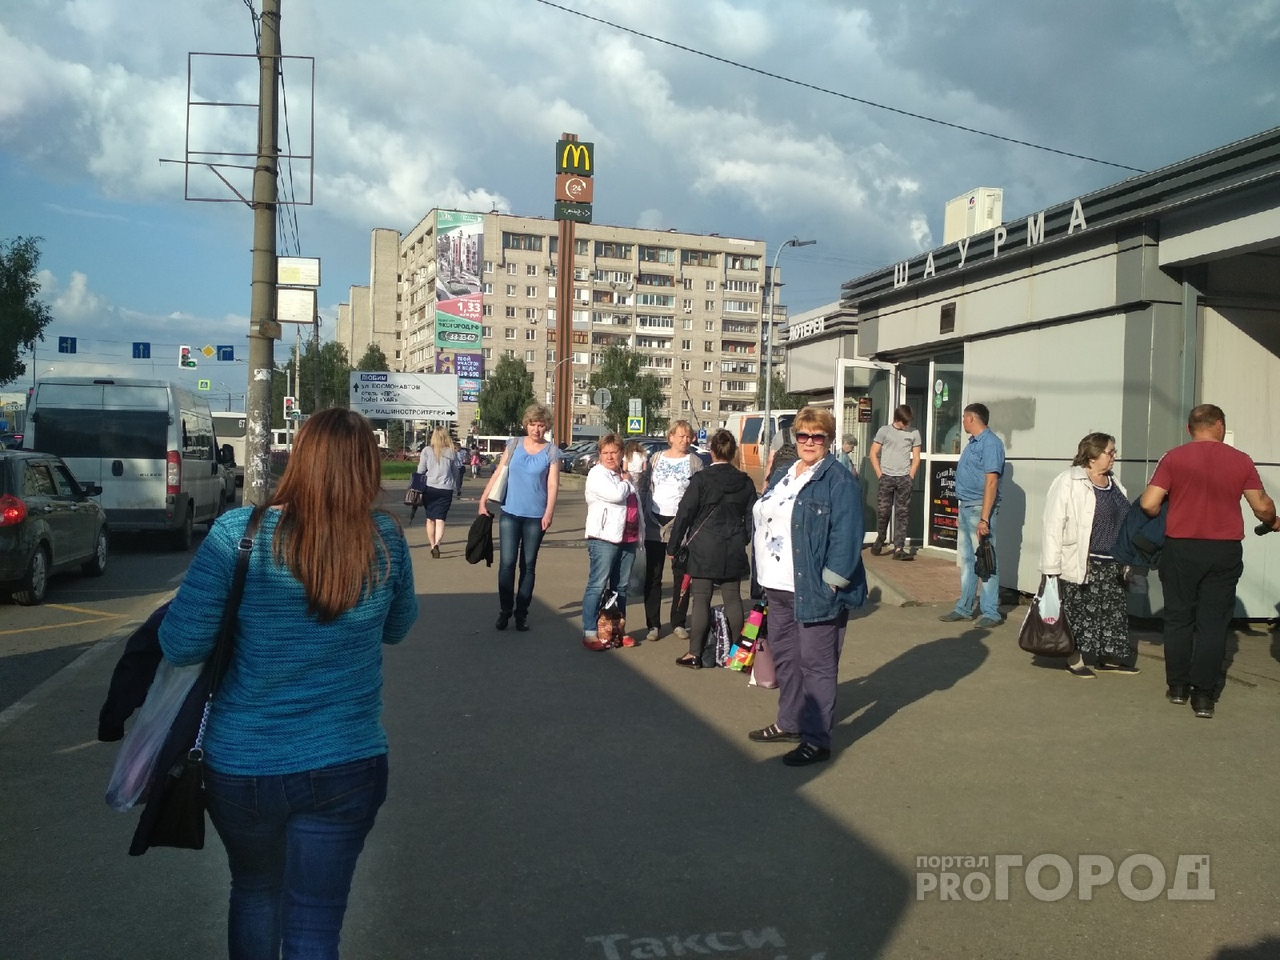 Максимум - 31,2 рубля: в Ярославле озвучили тарифы на проезд в общественном транспорте